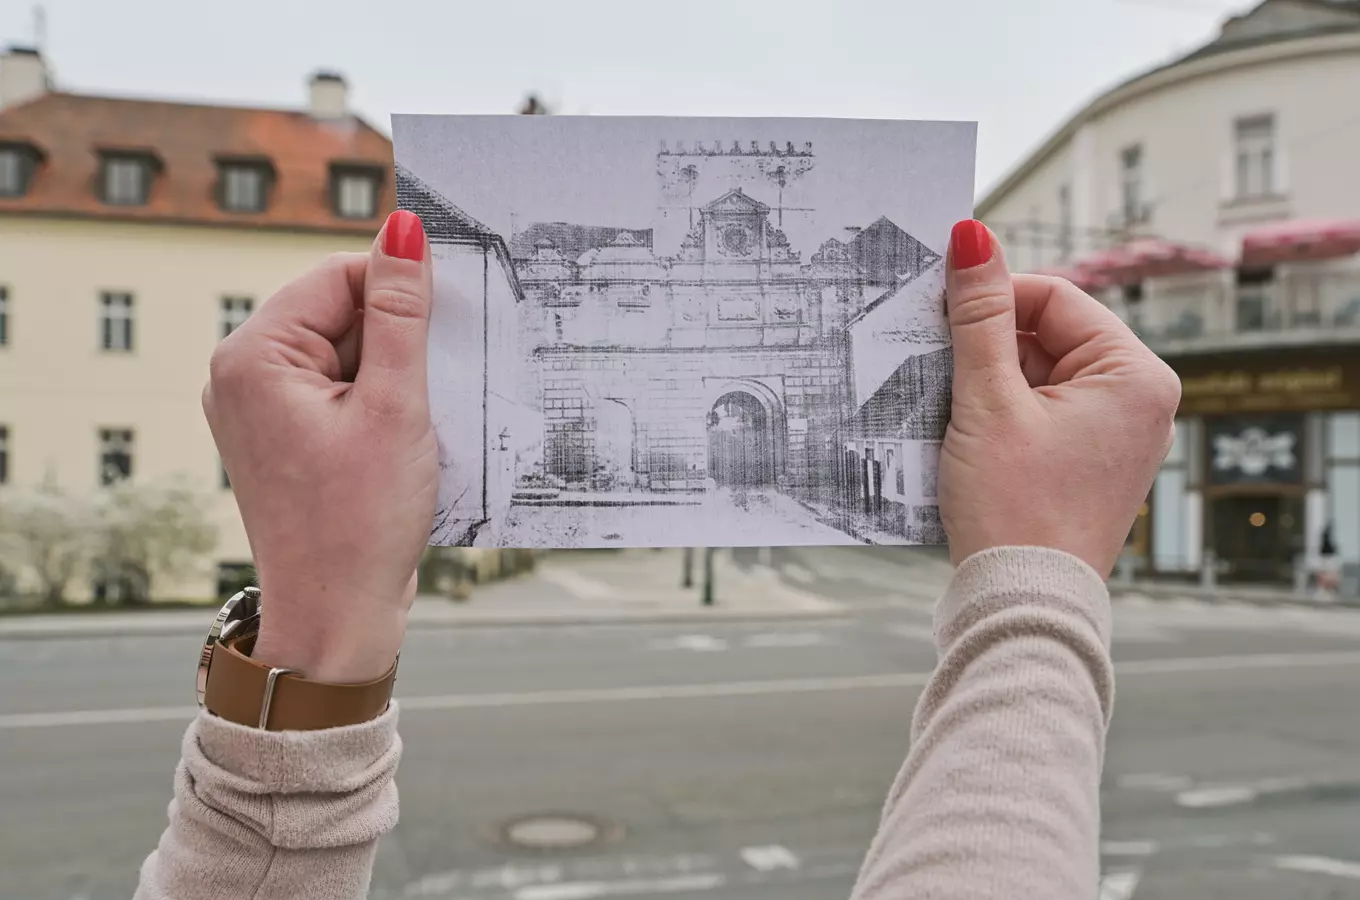 Po stopách renesance – komentovaná prohlídka historického centra Hradce Králové